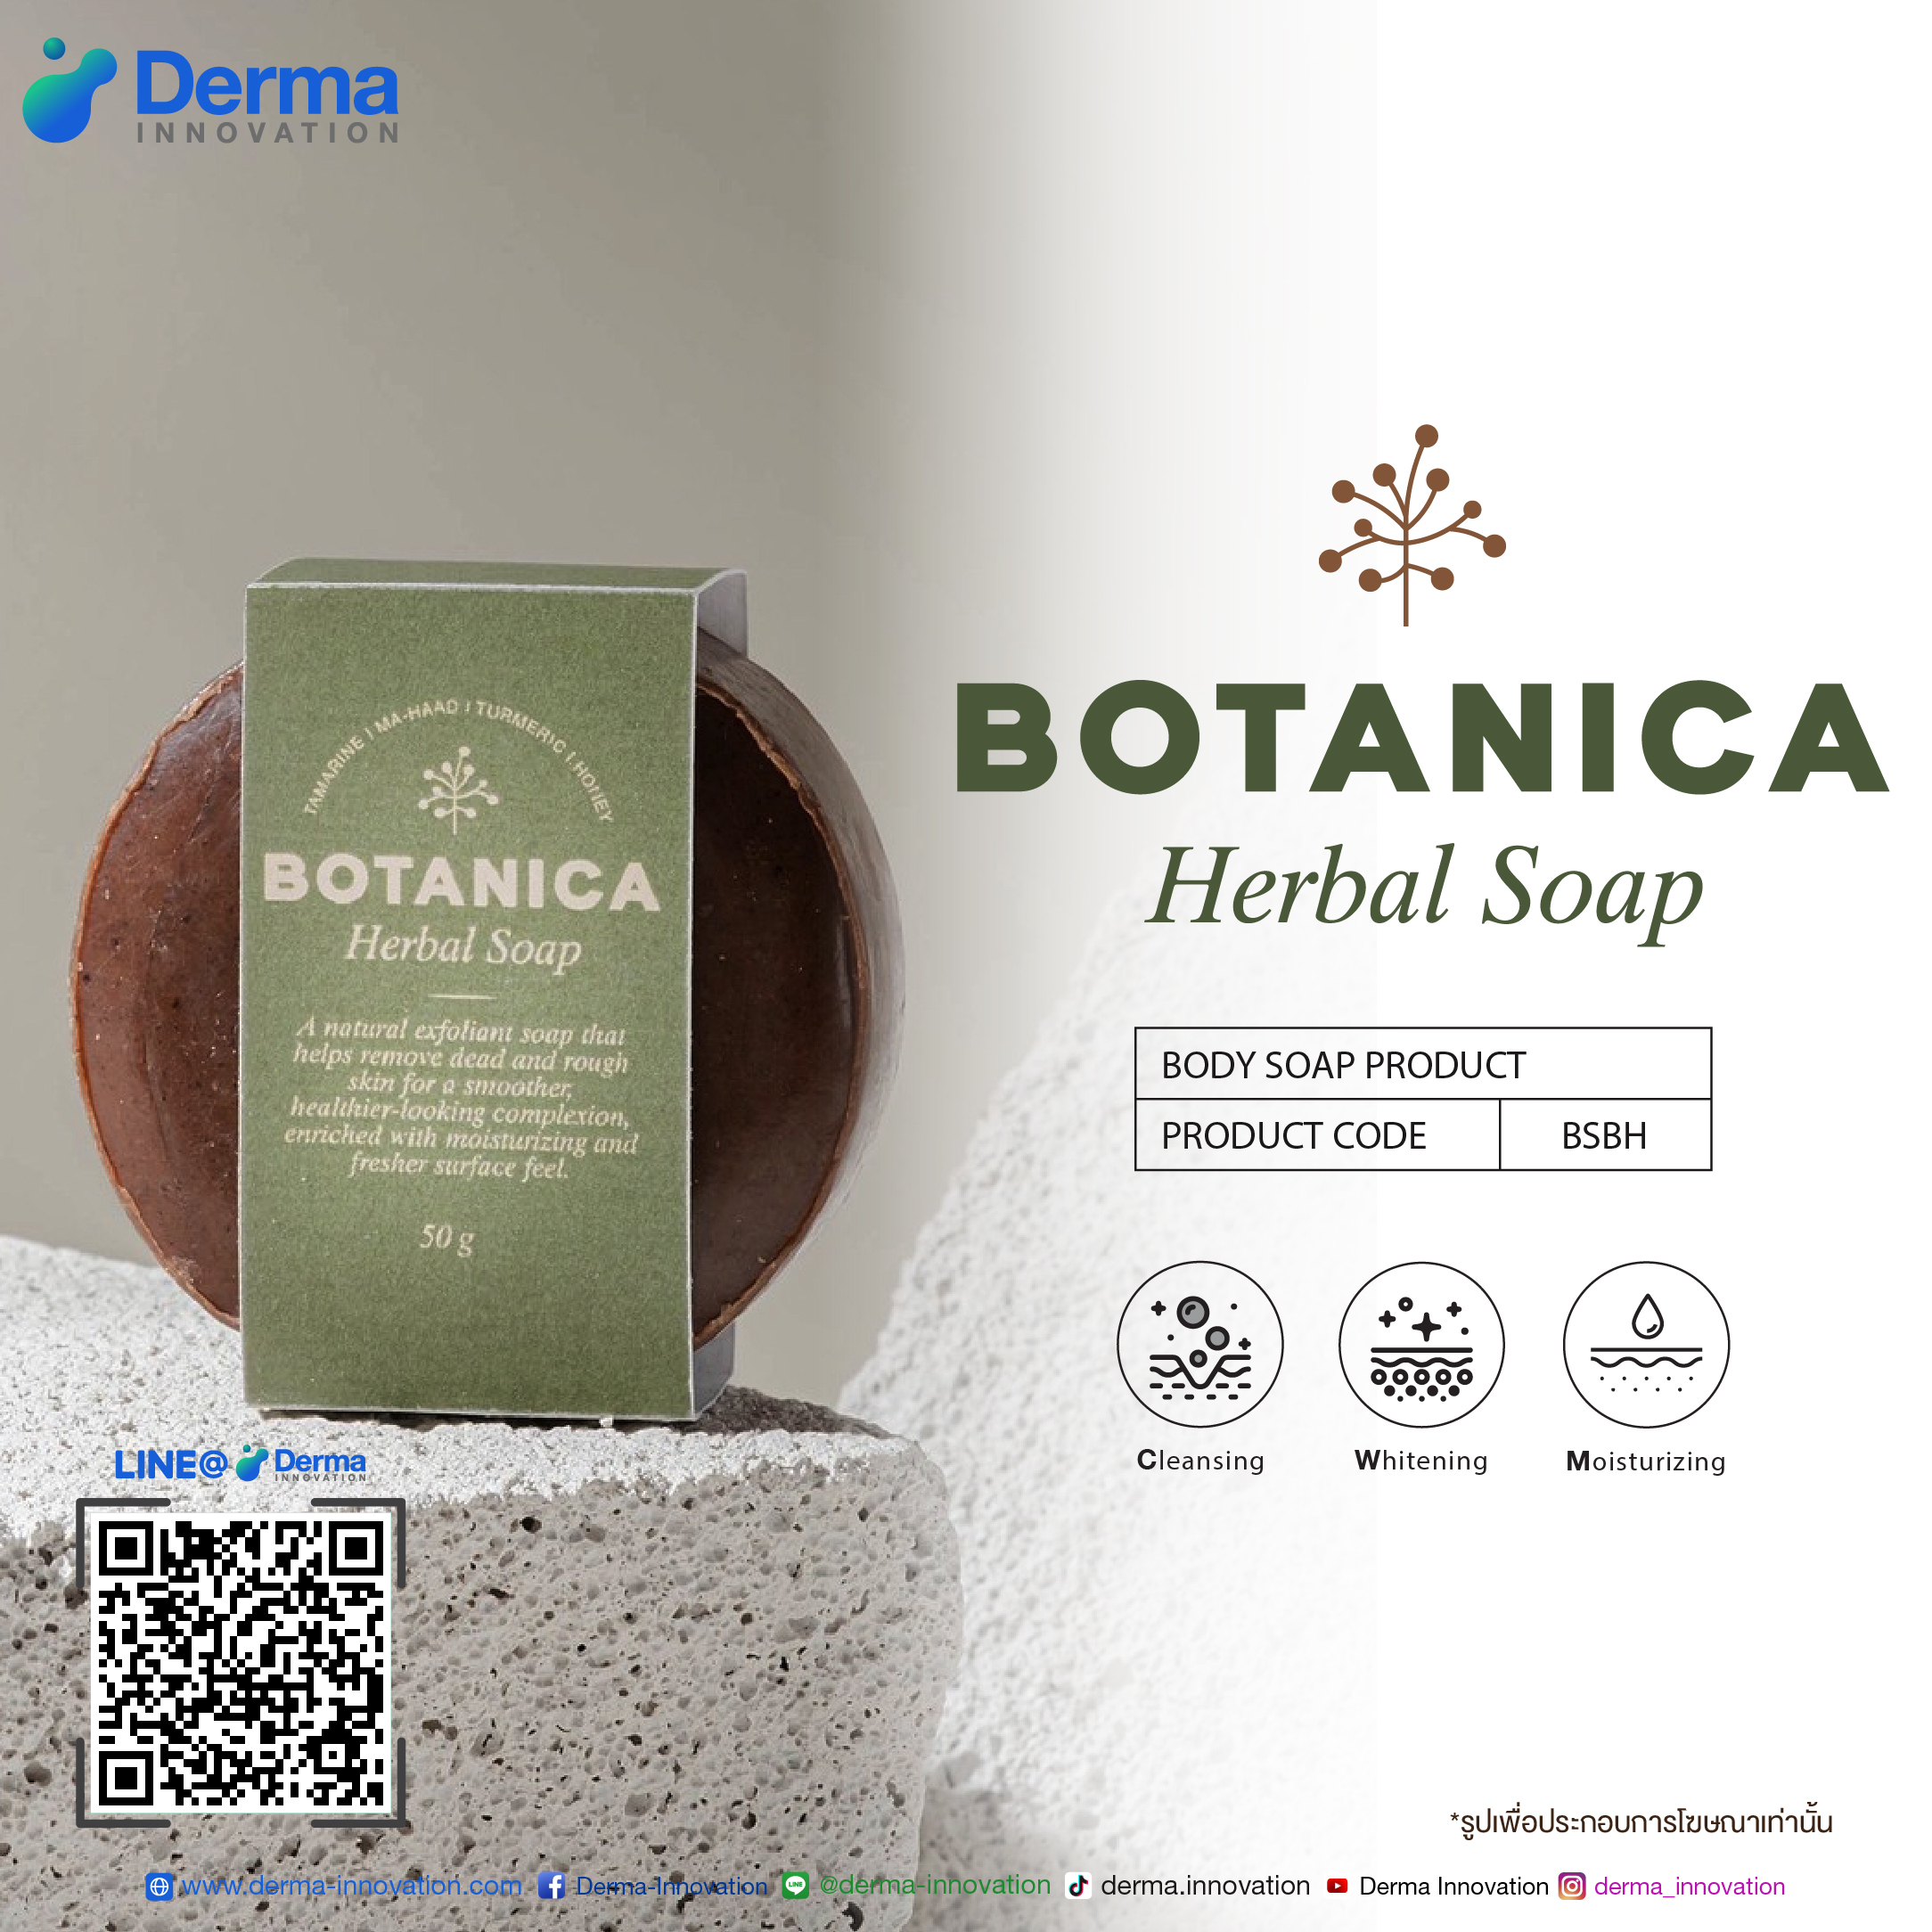 Botanica Herbal Soap